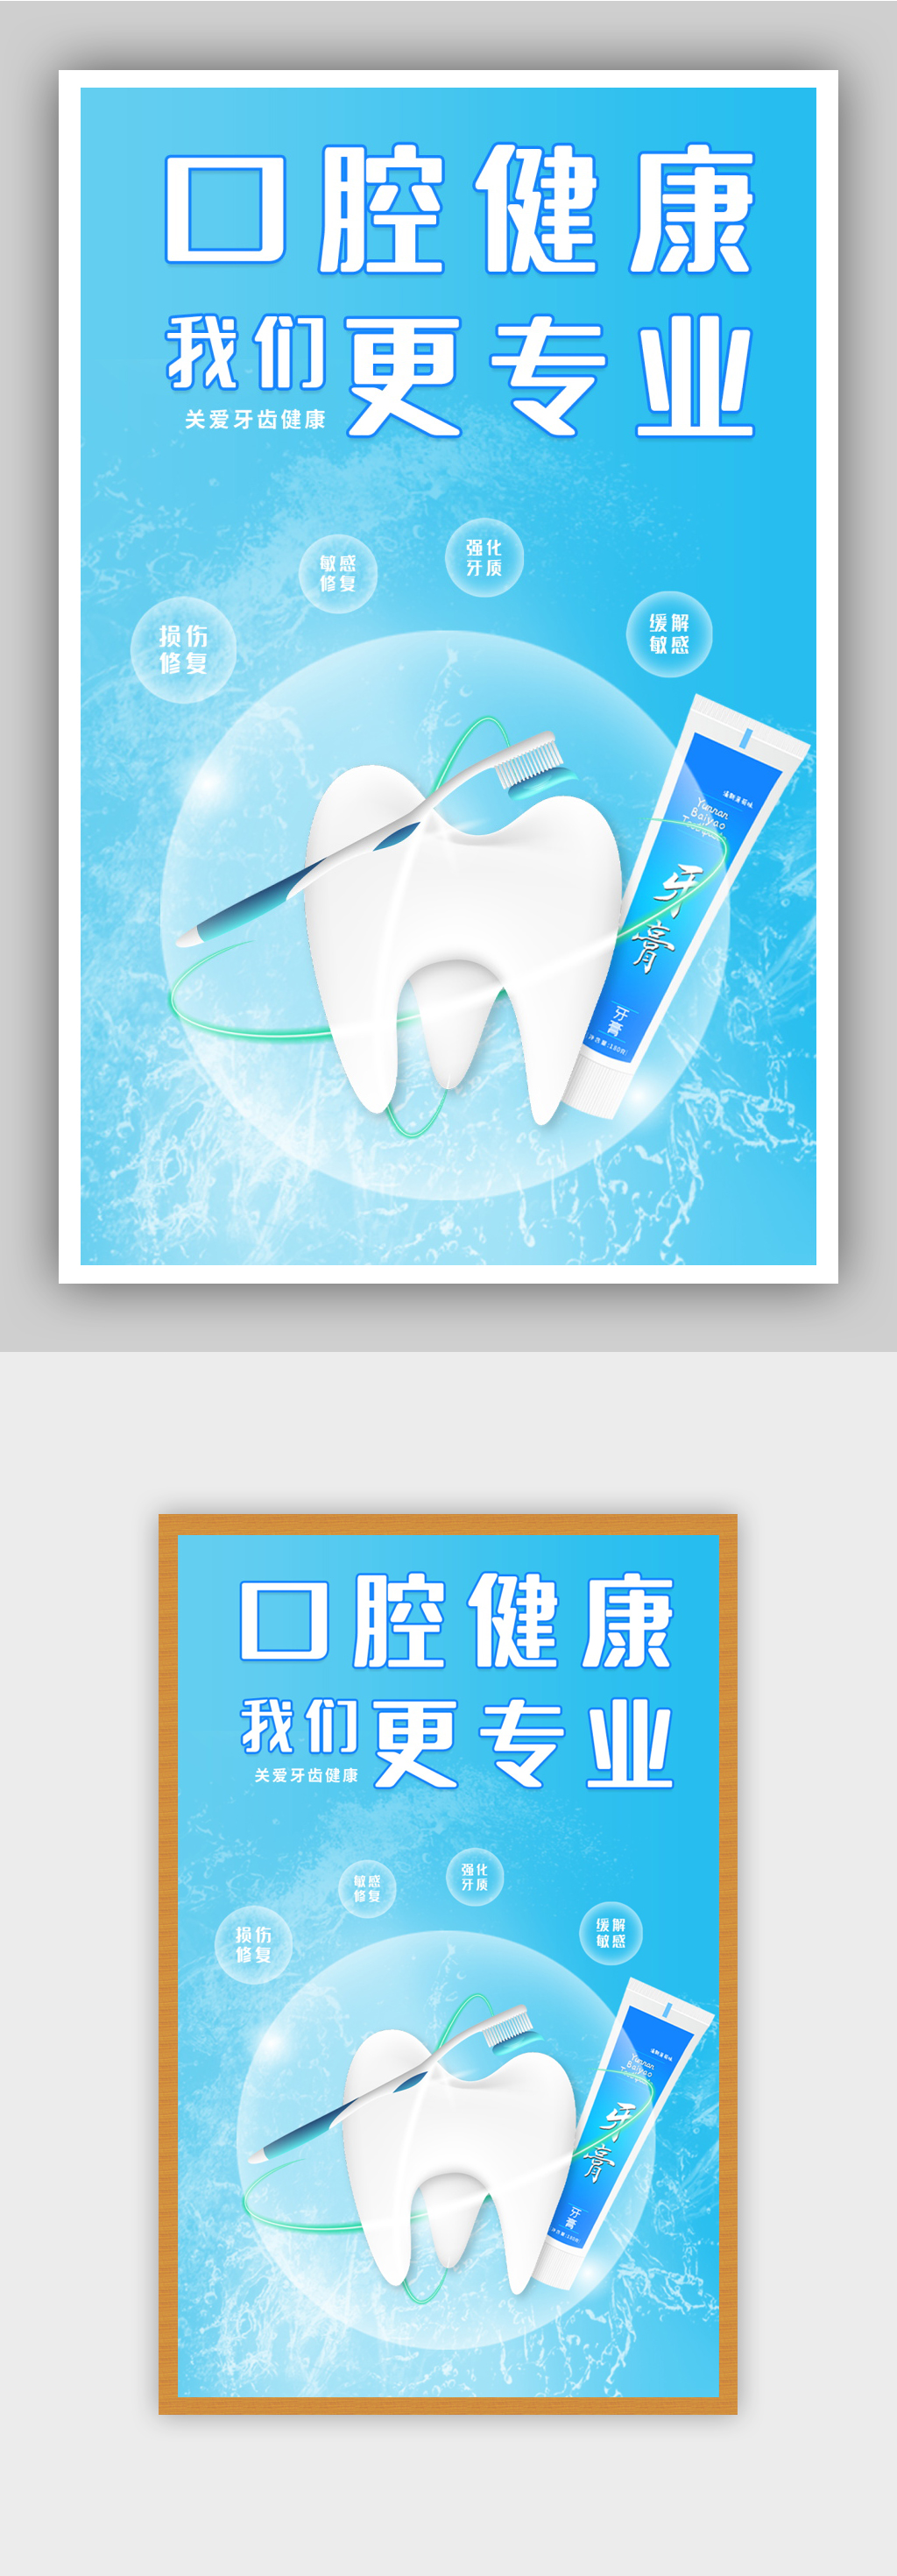 最具创意的牙膏广告图片